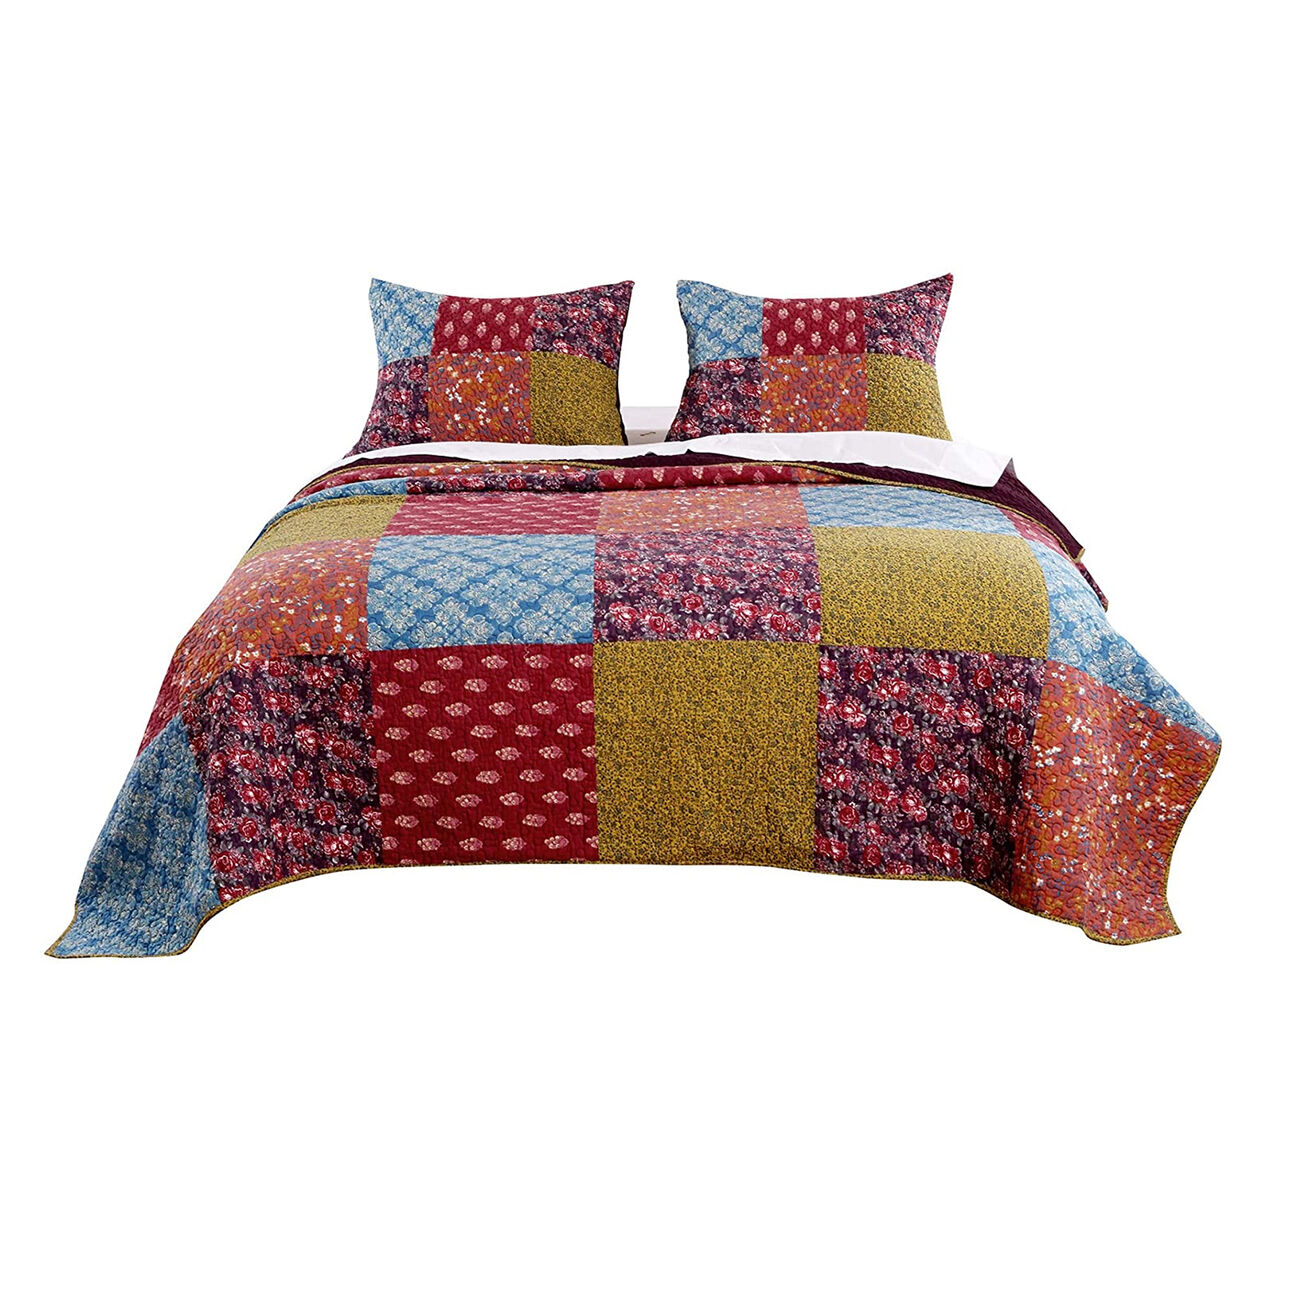 2 Piece Cotton Twin Size Quilt Set with Patchwork, Multicolor - BM223403